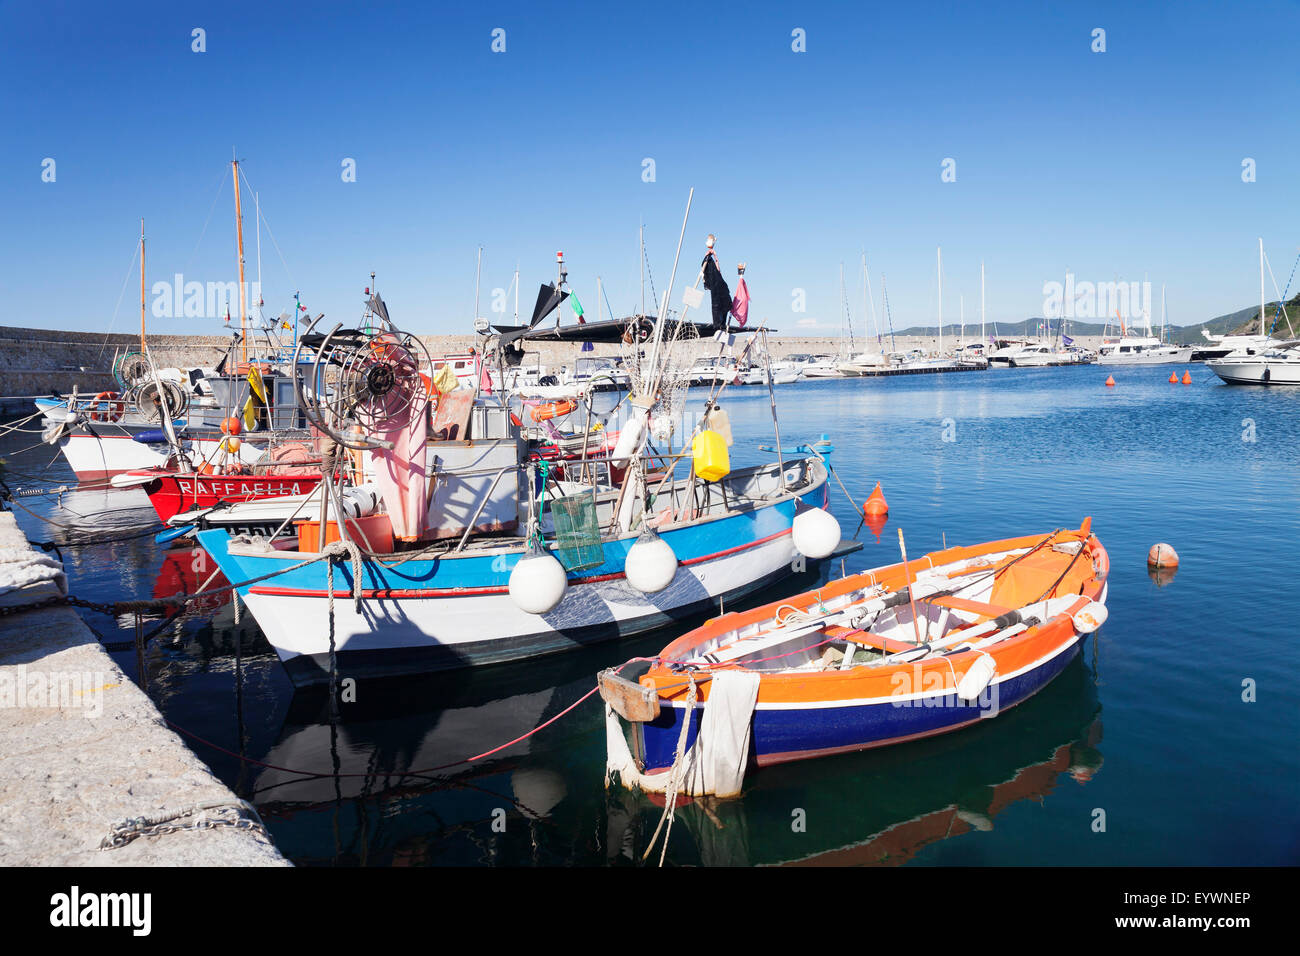 Port de Marciana Marina avec des bateaux de pêche, Marciana Marina, île d'Elbe, province de Livourne, Toscane, Italie, Méditerranée Banque D'Images